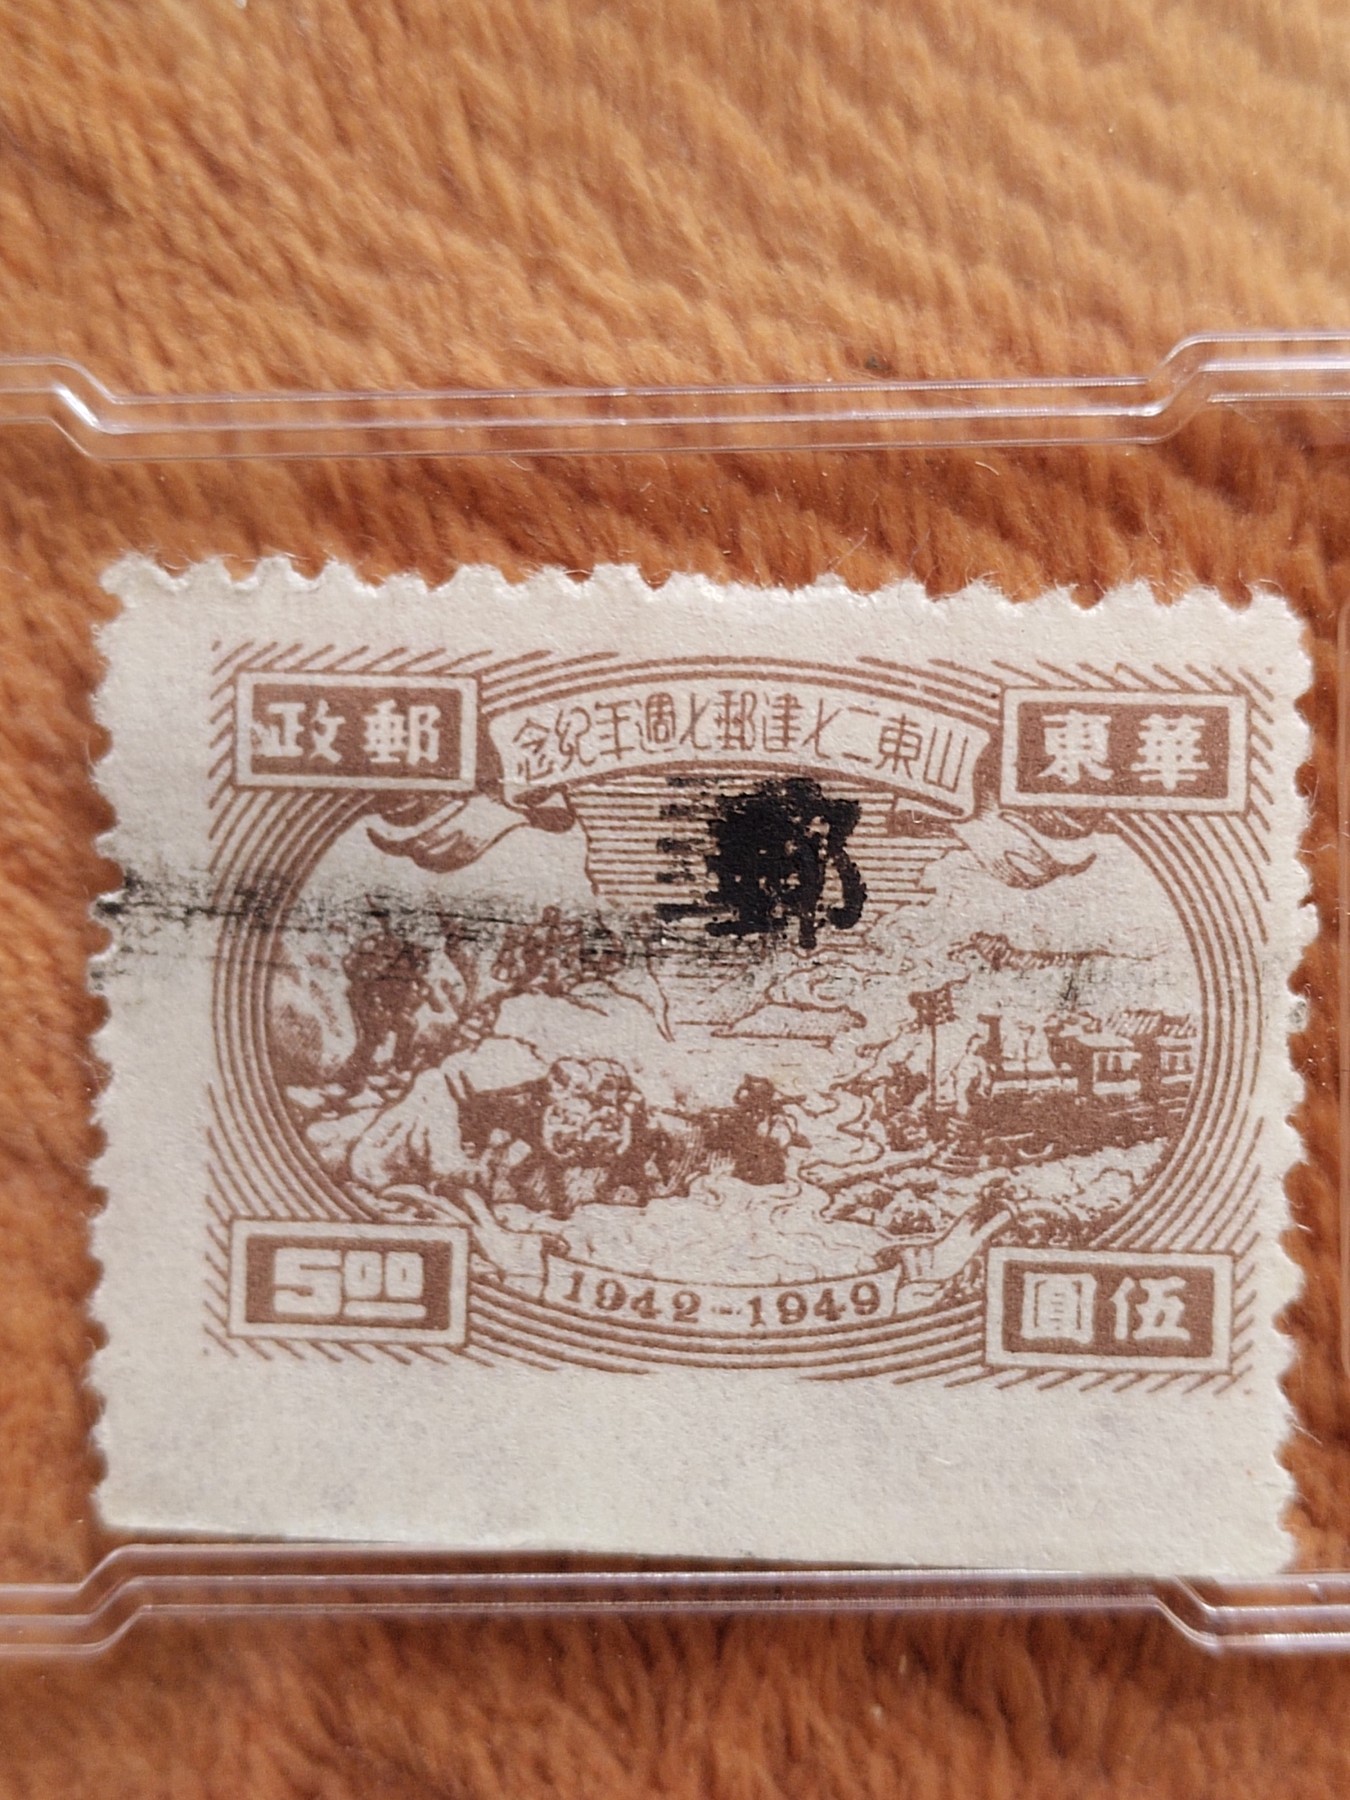 1949年华东邮政山东二七建邮七周年纪念邮票。 - 子木收藏小店- 子木 